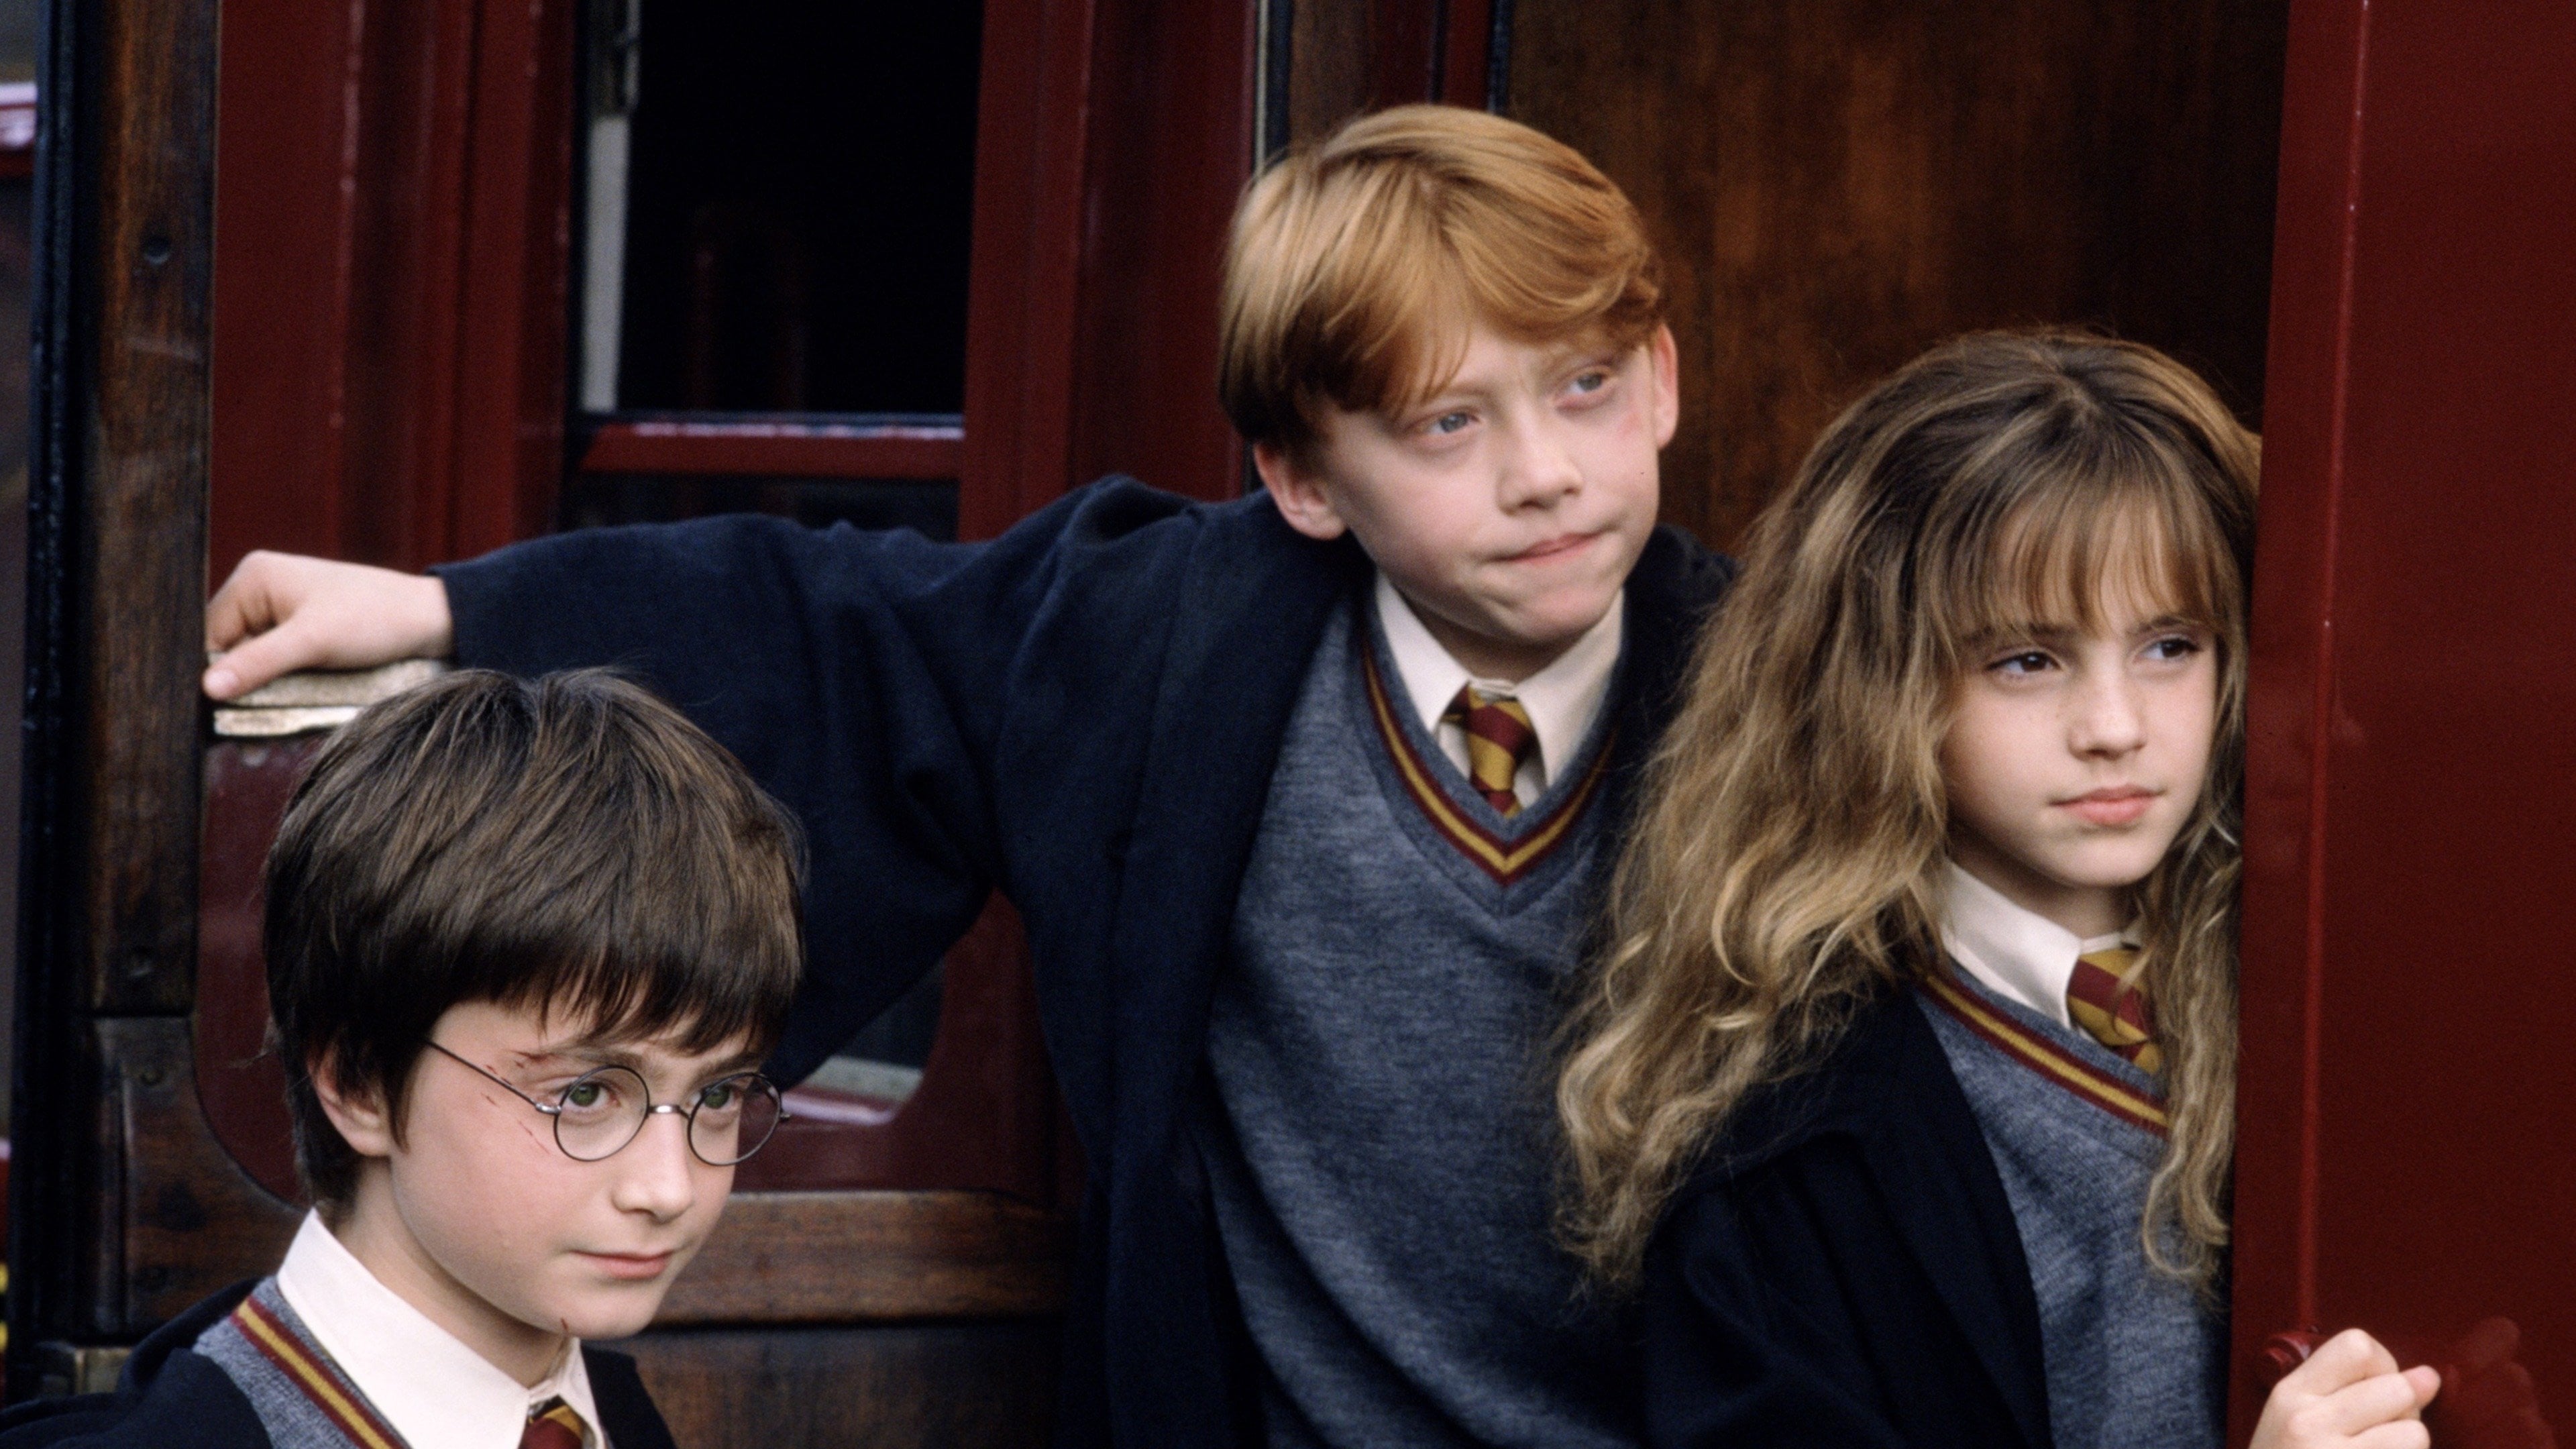 Harry Potter : Chris Columbus évoque le tournage et son envie de réaliser "L'Enfant maudit"